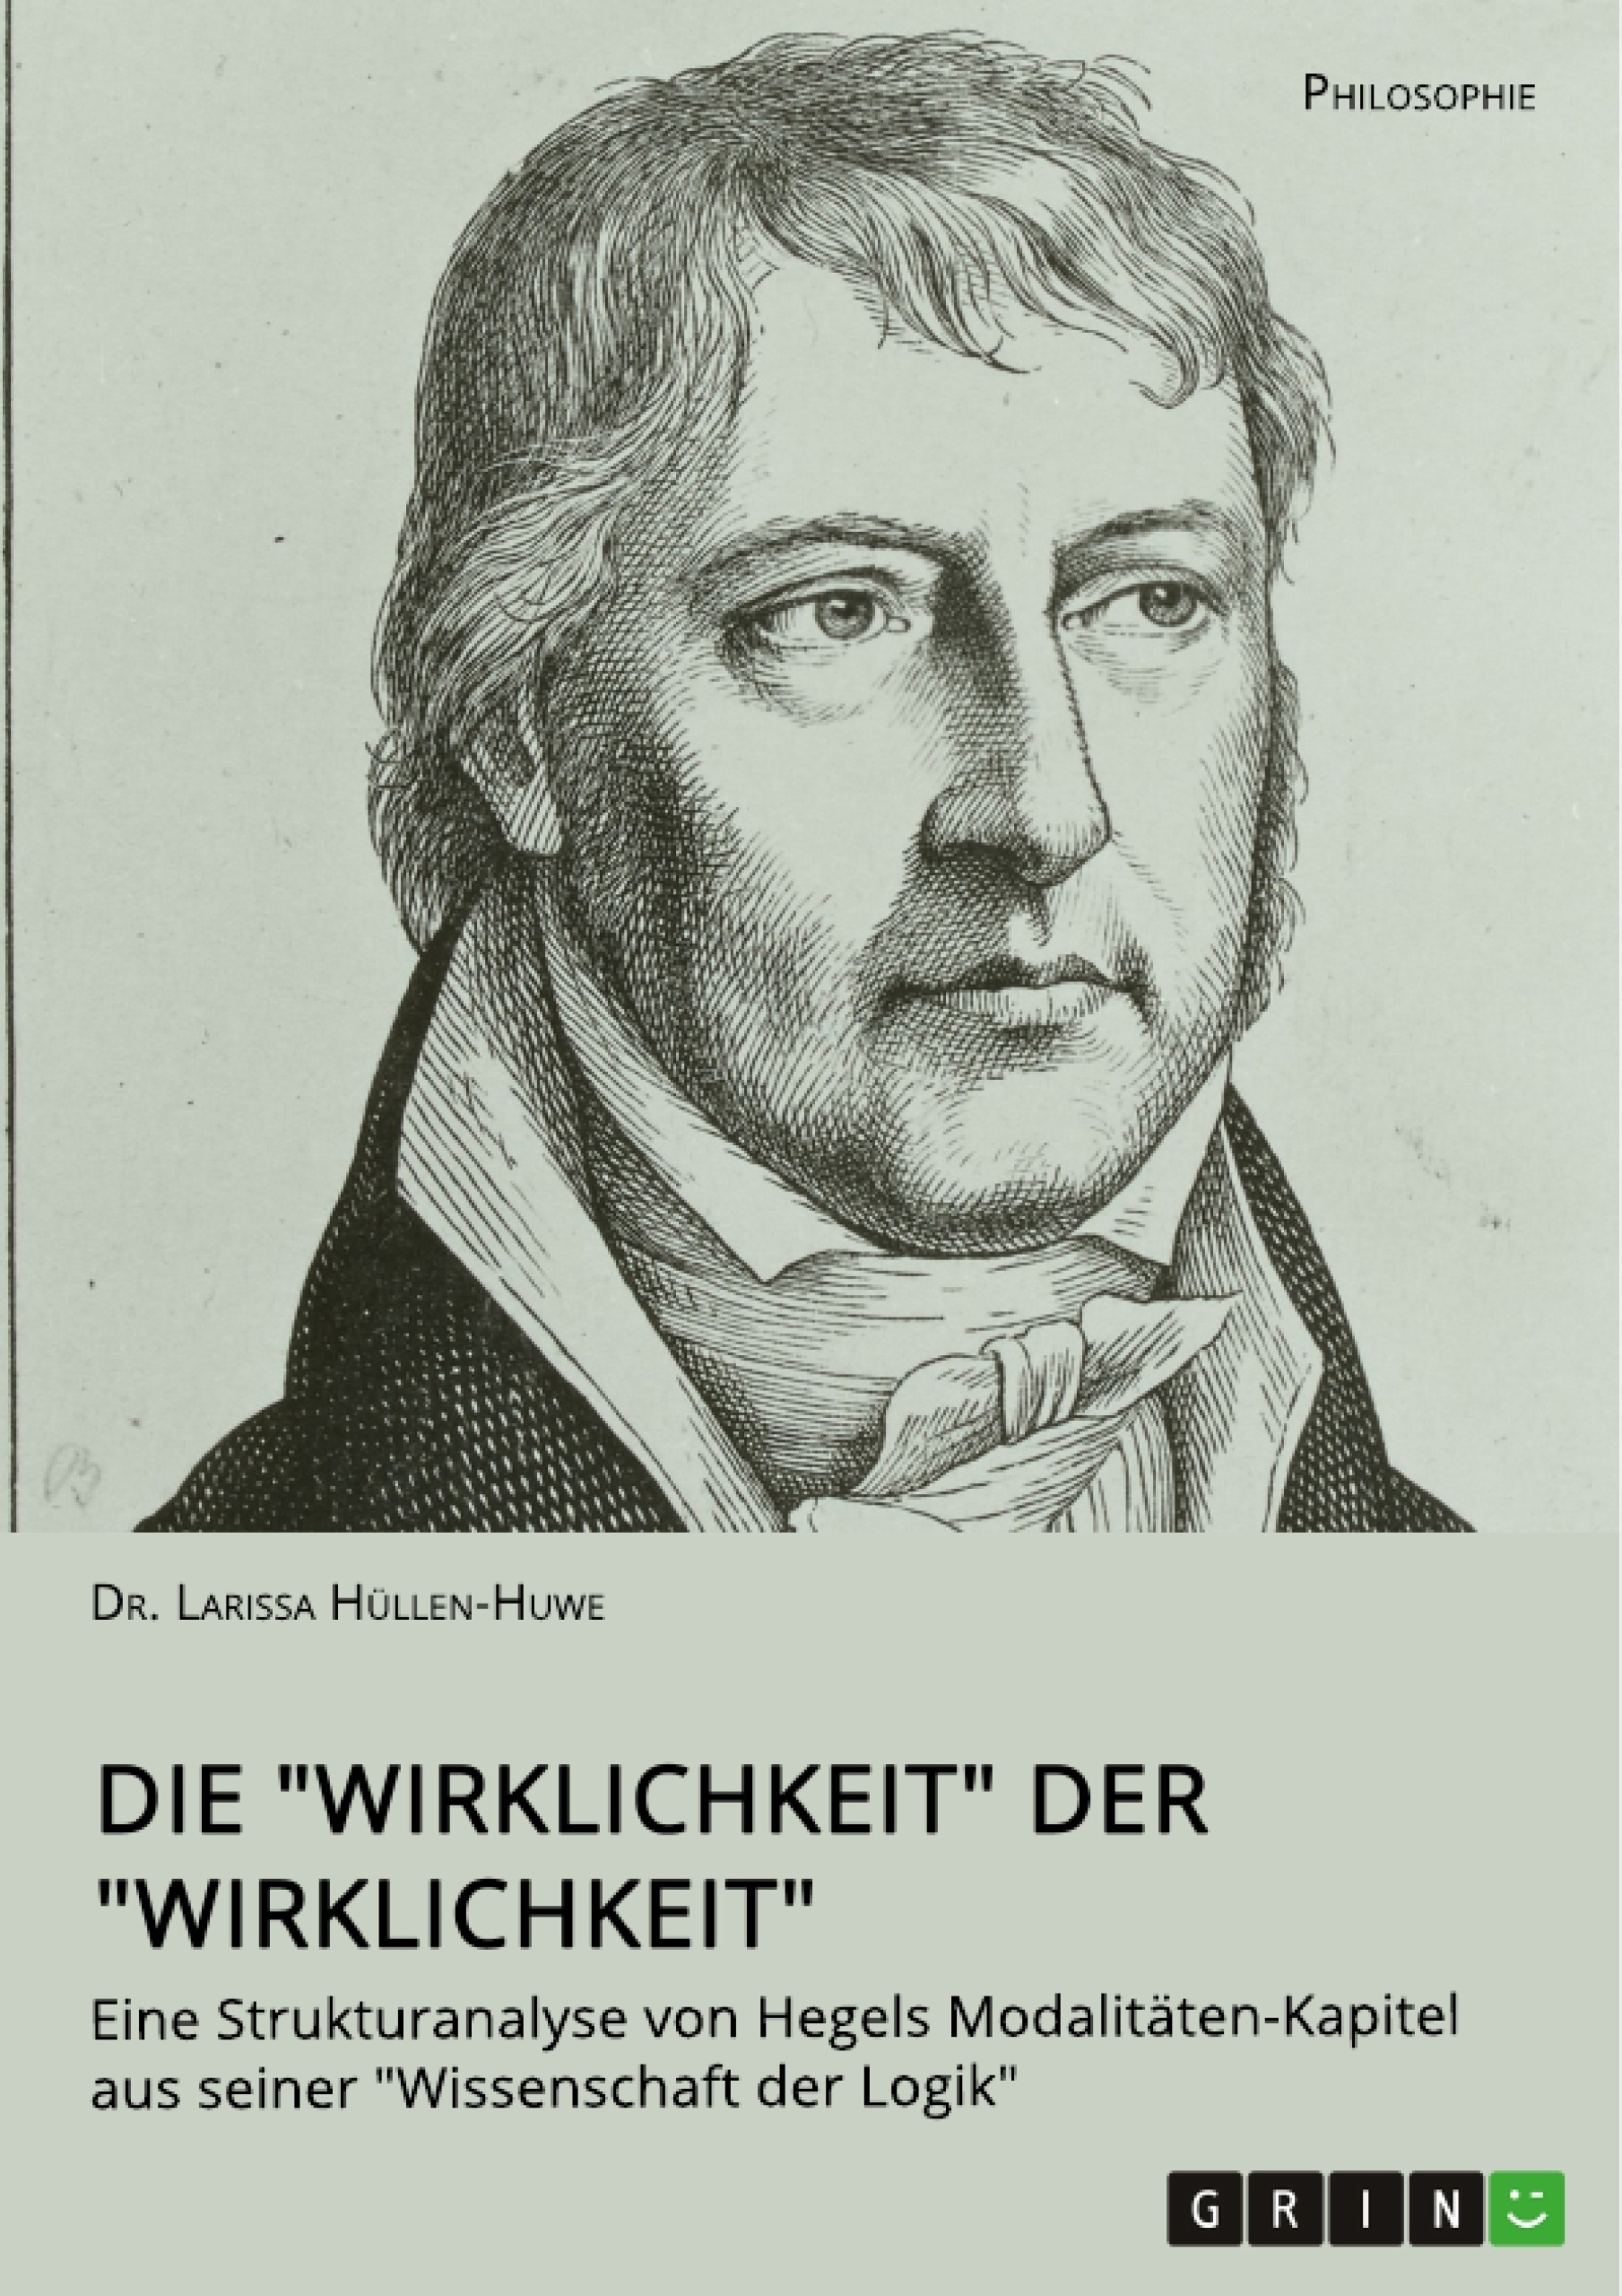 Título: Die "Wirklichkeit" der "Wirklichkeit". Eine Strukturanalyse von Hegels Modalitäten-Kapitel aus seiner "Wissenschaft der Logik"